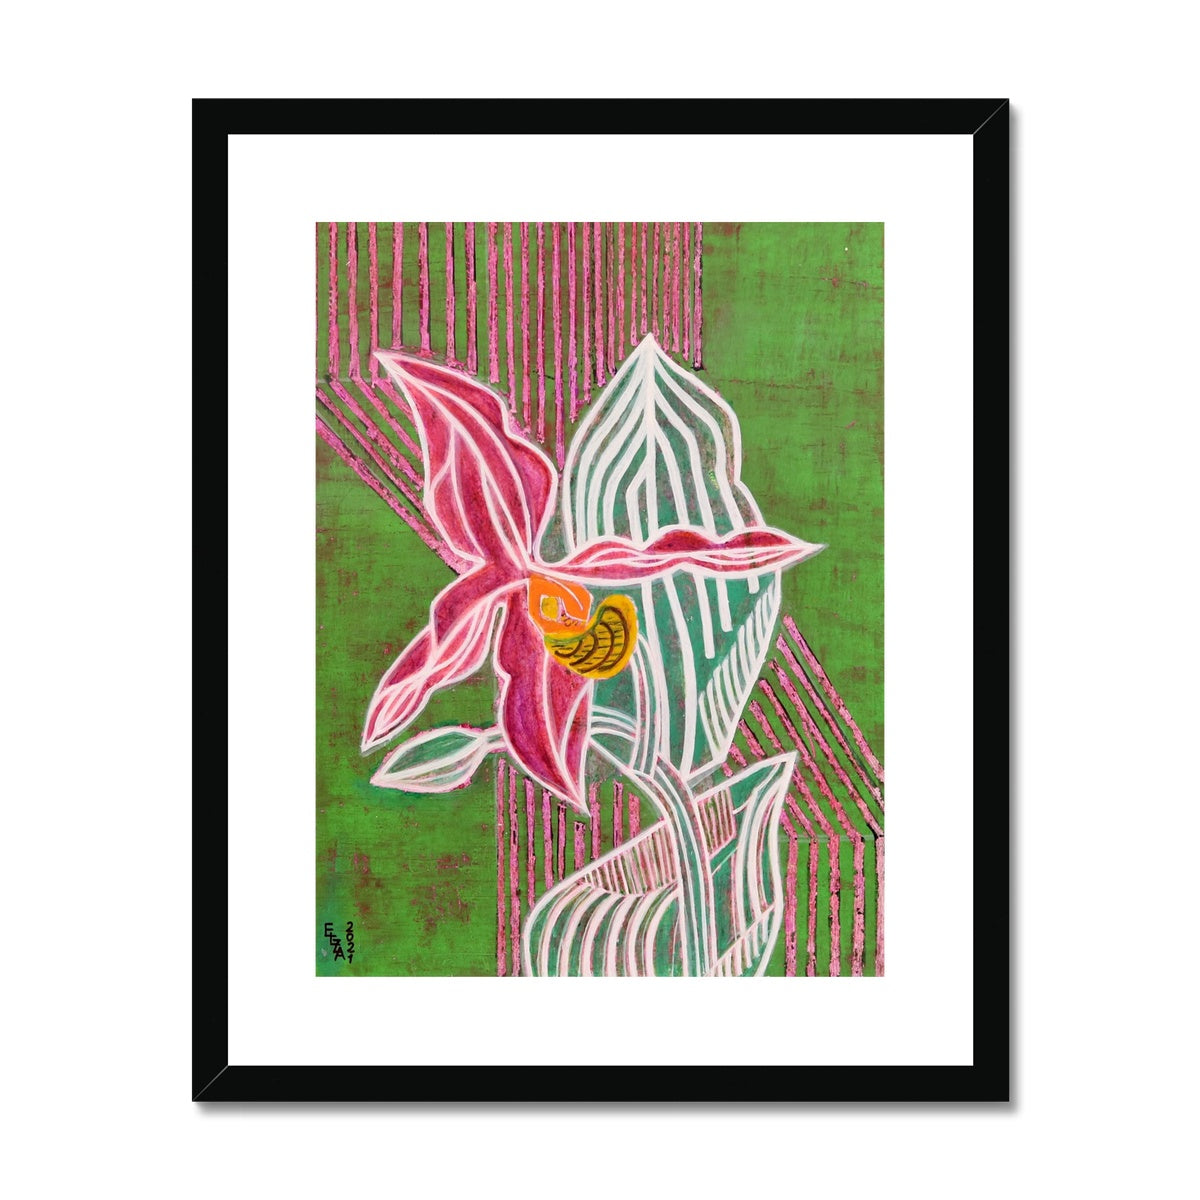 Flower, Framed & Mounted Print